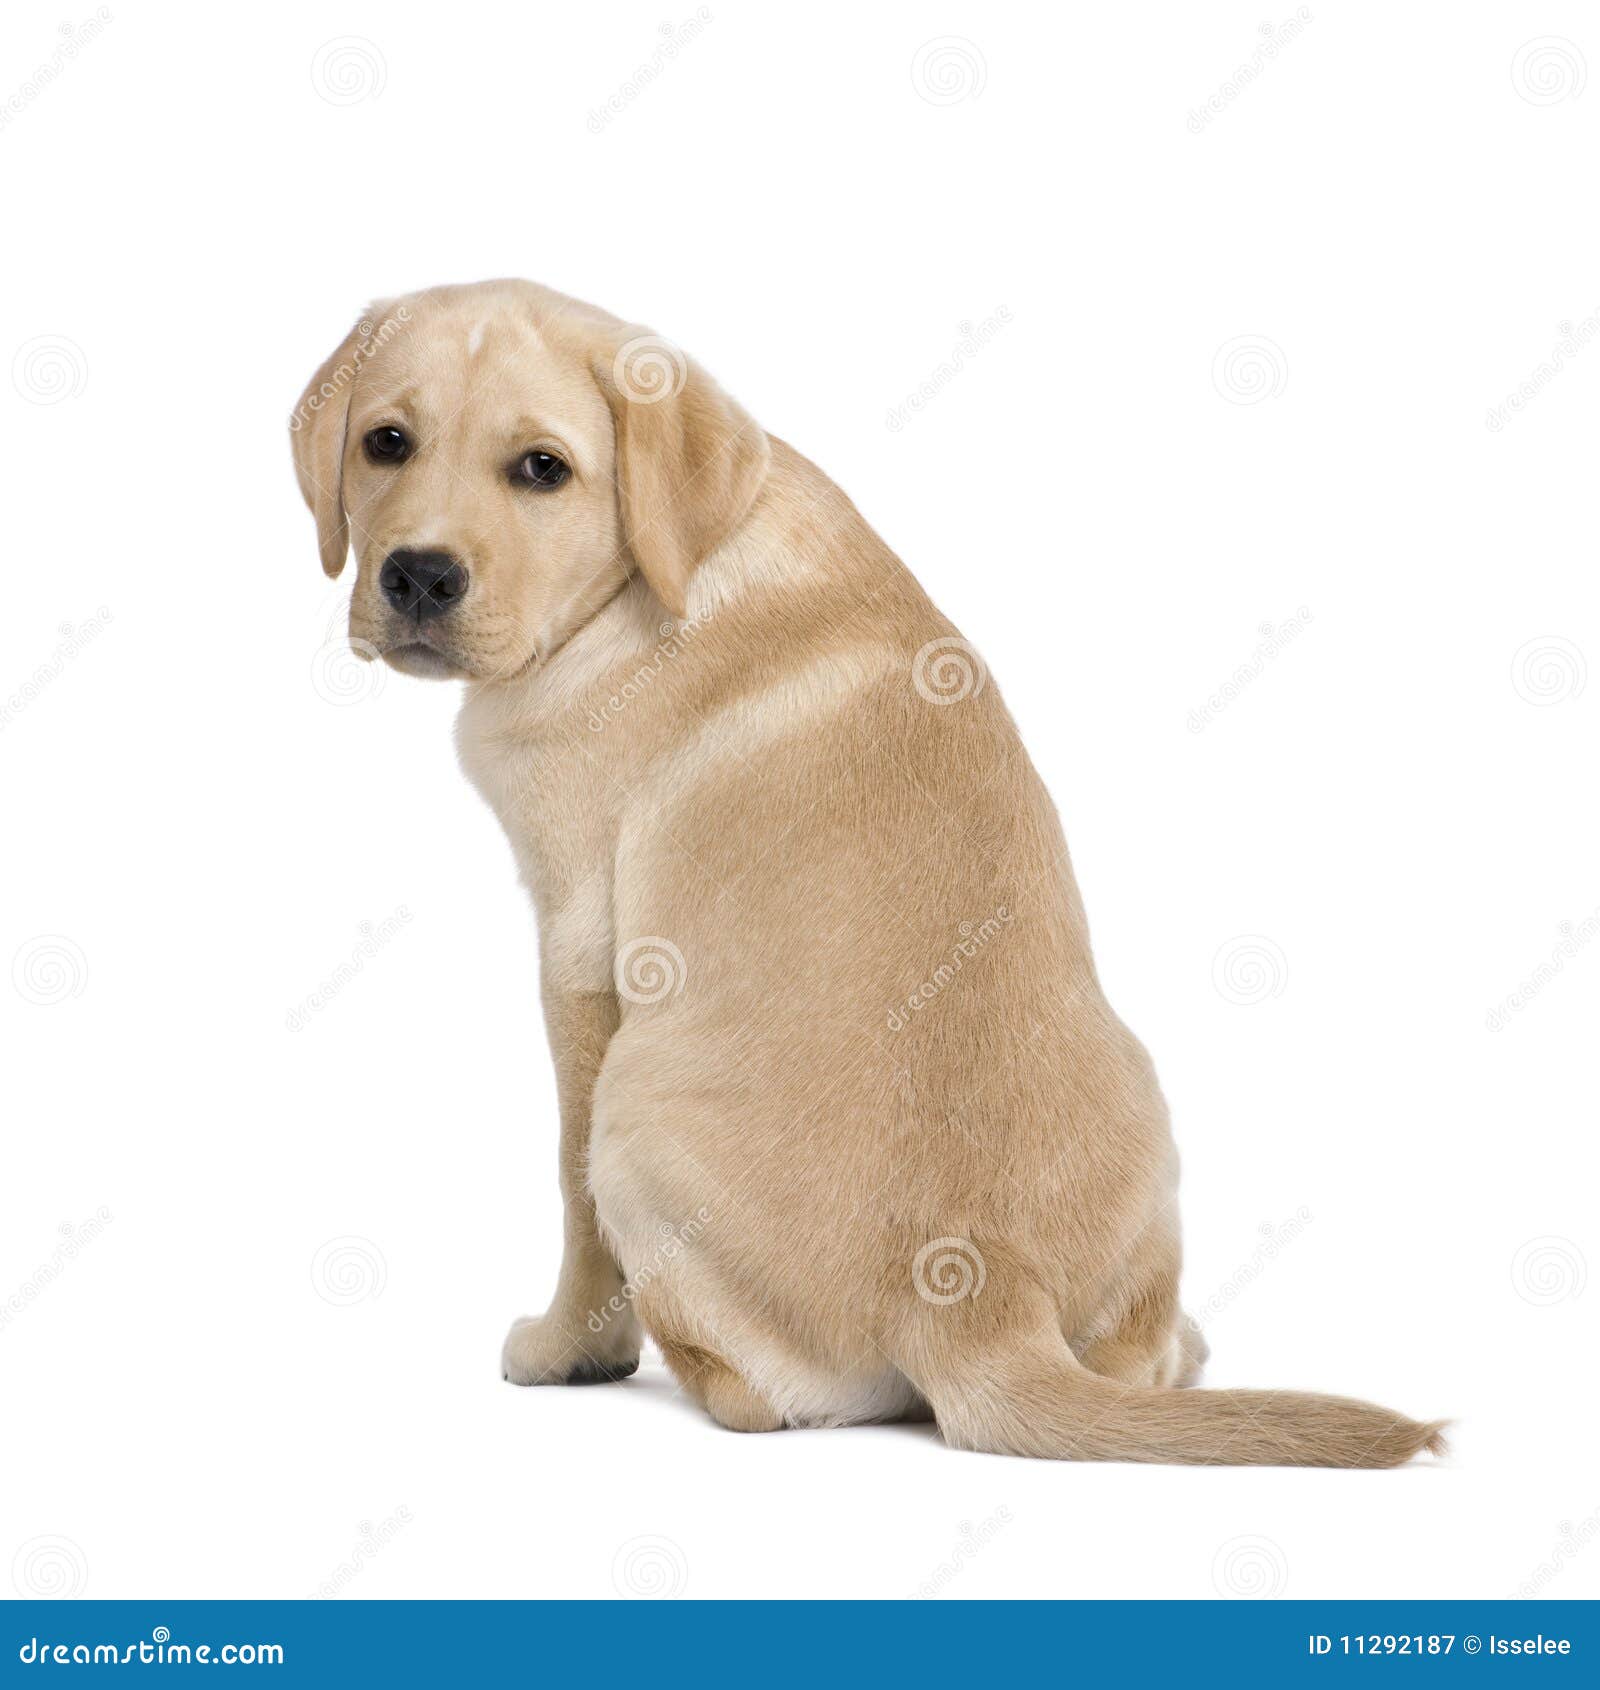 冬日奶油色拉布拉多犬摇头 库存图片. 图片 包括有 上色, 无底, 小狗, 逗人喜爱, 飞行, 震动, 吹的 - 167306561